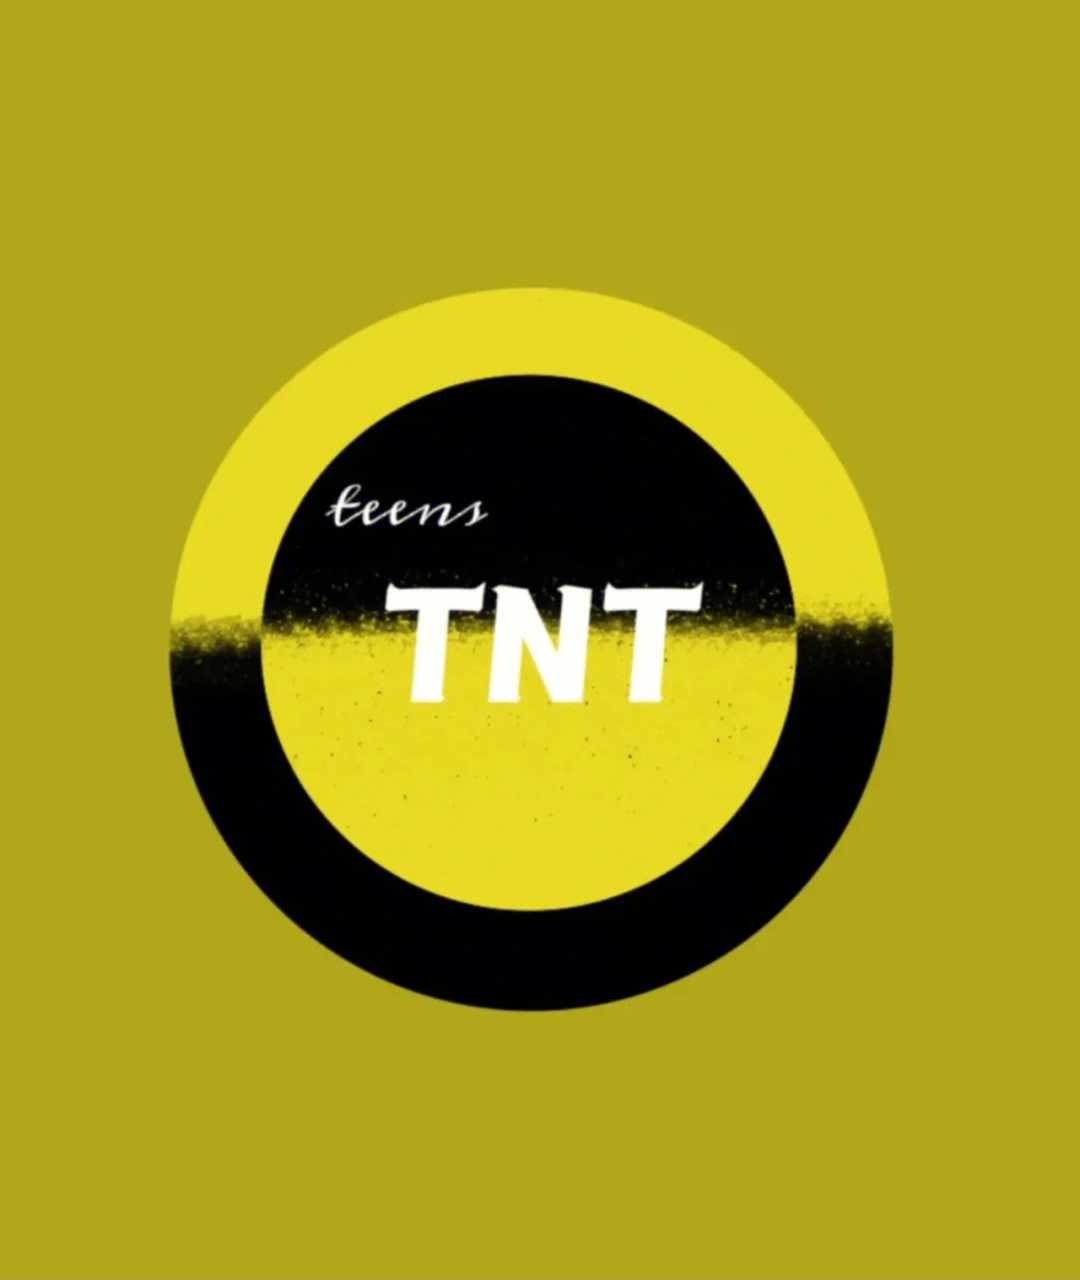 TNT时代少年团的logo图片